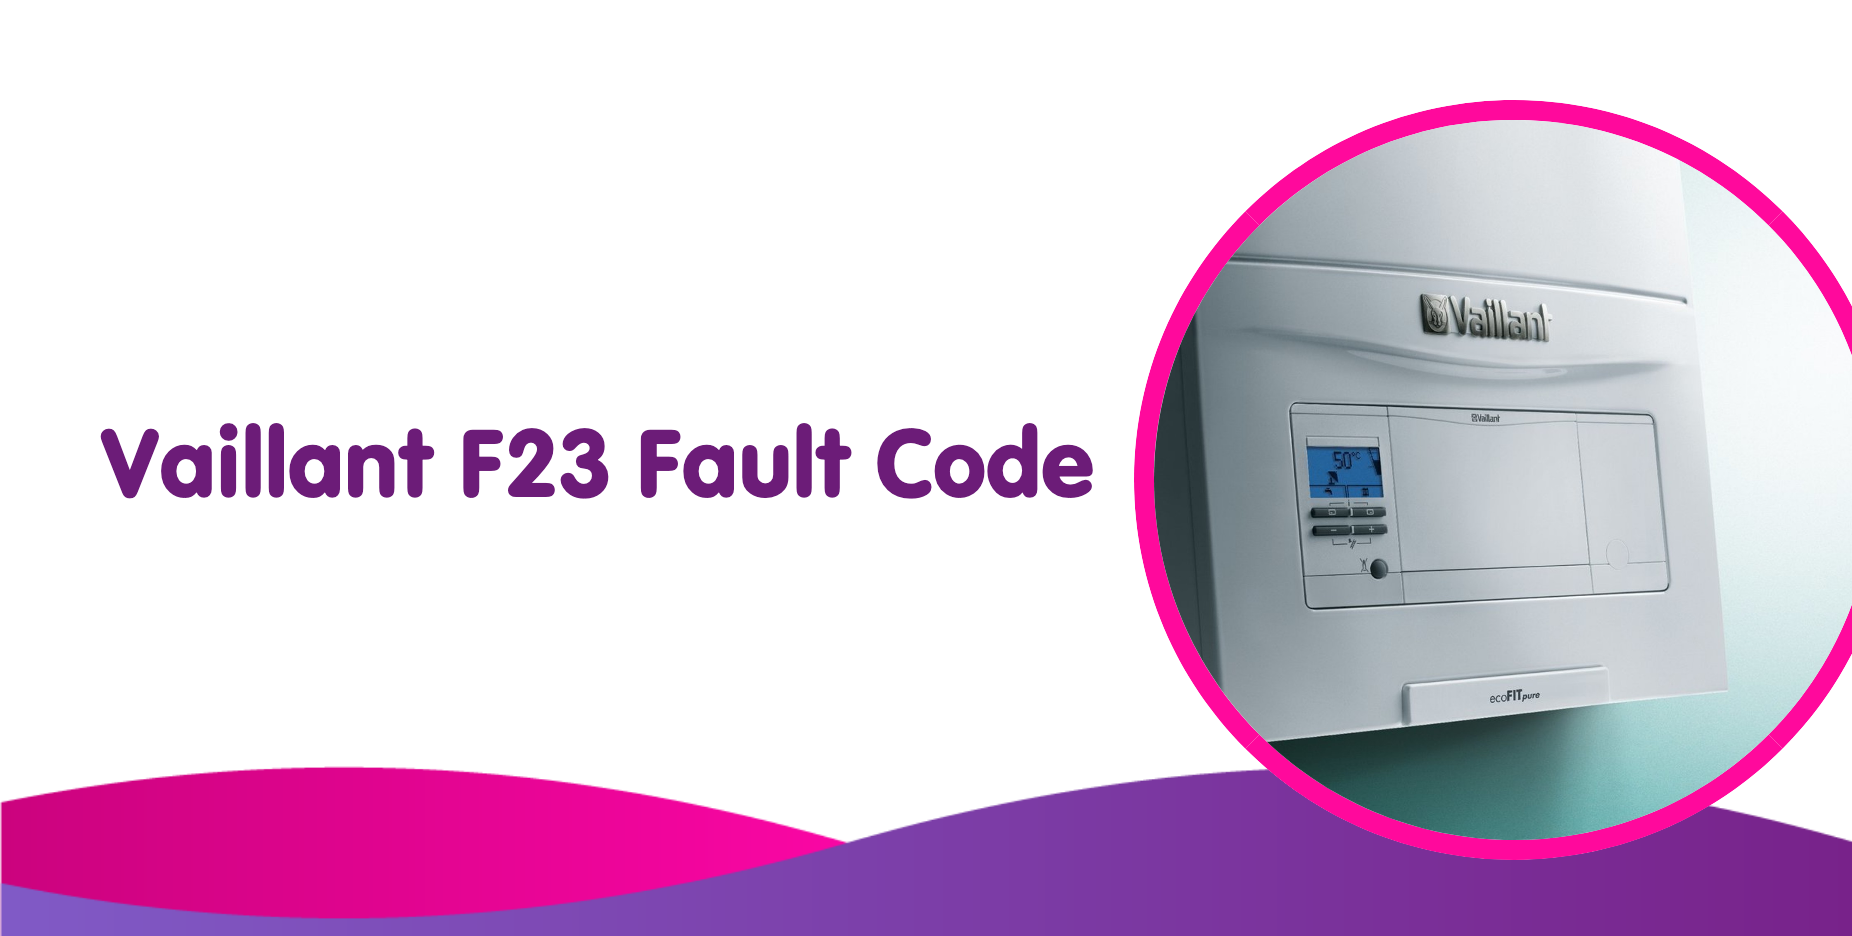 vaillant f23 fault code